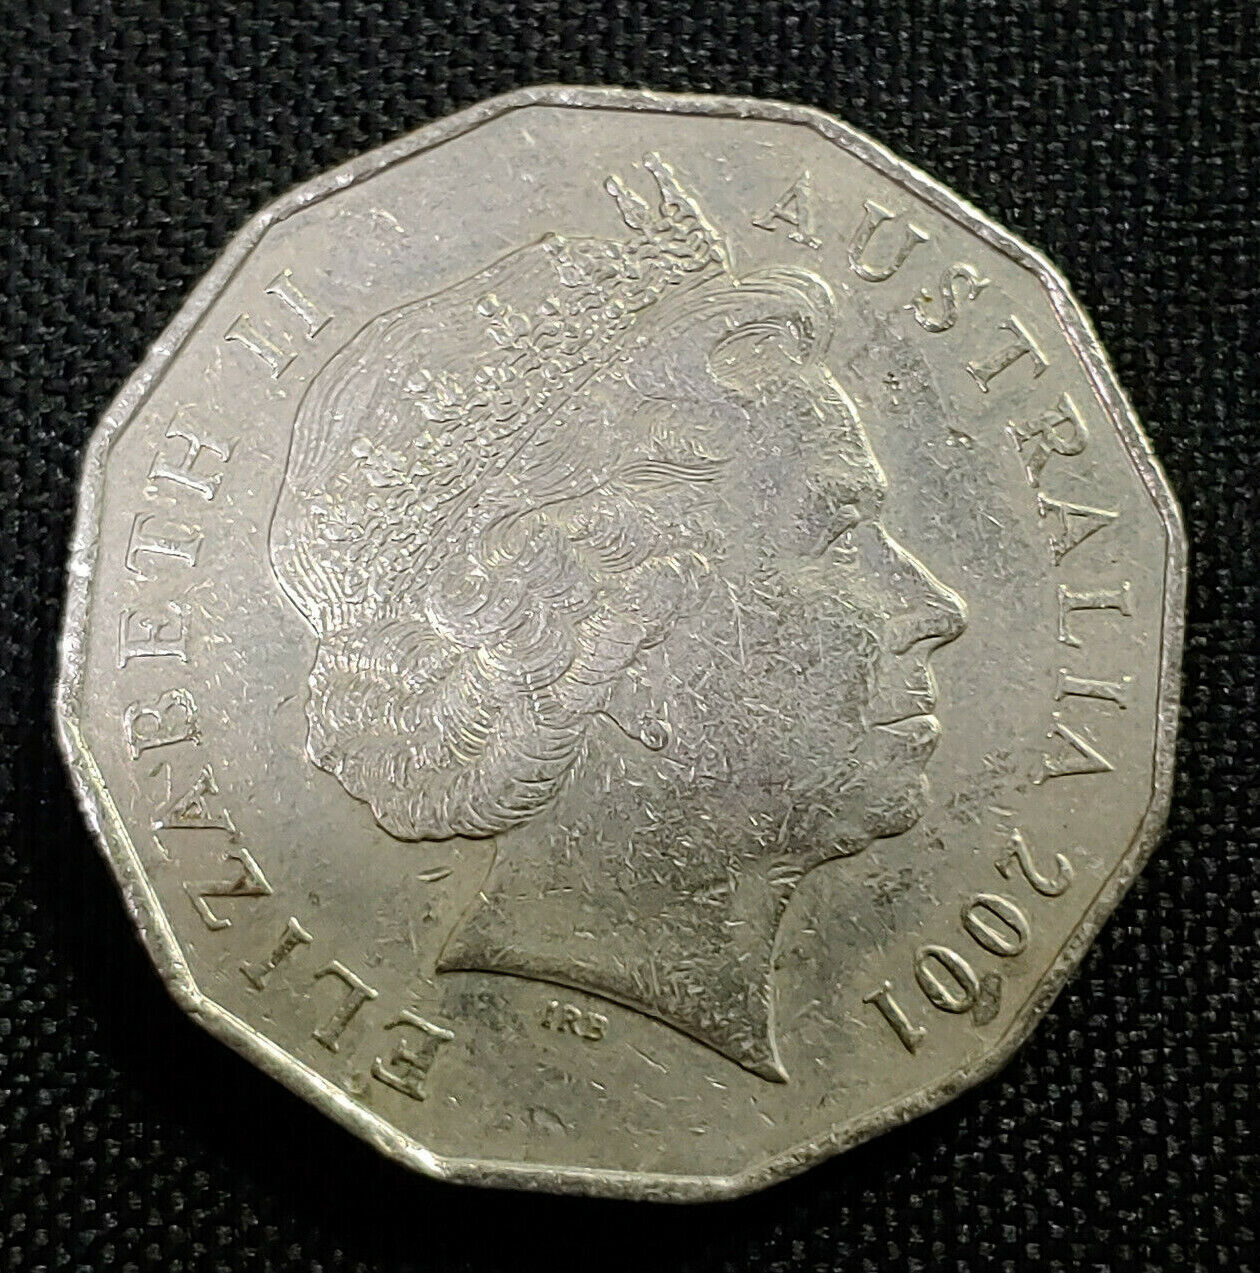 Australia 2001 Elizabeth II Coin, 50 Cents